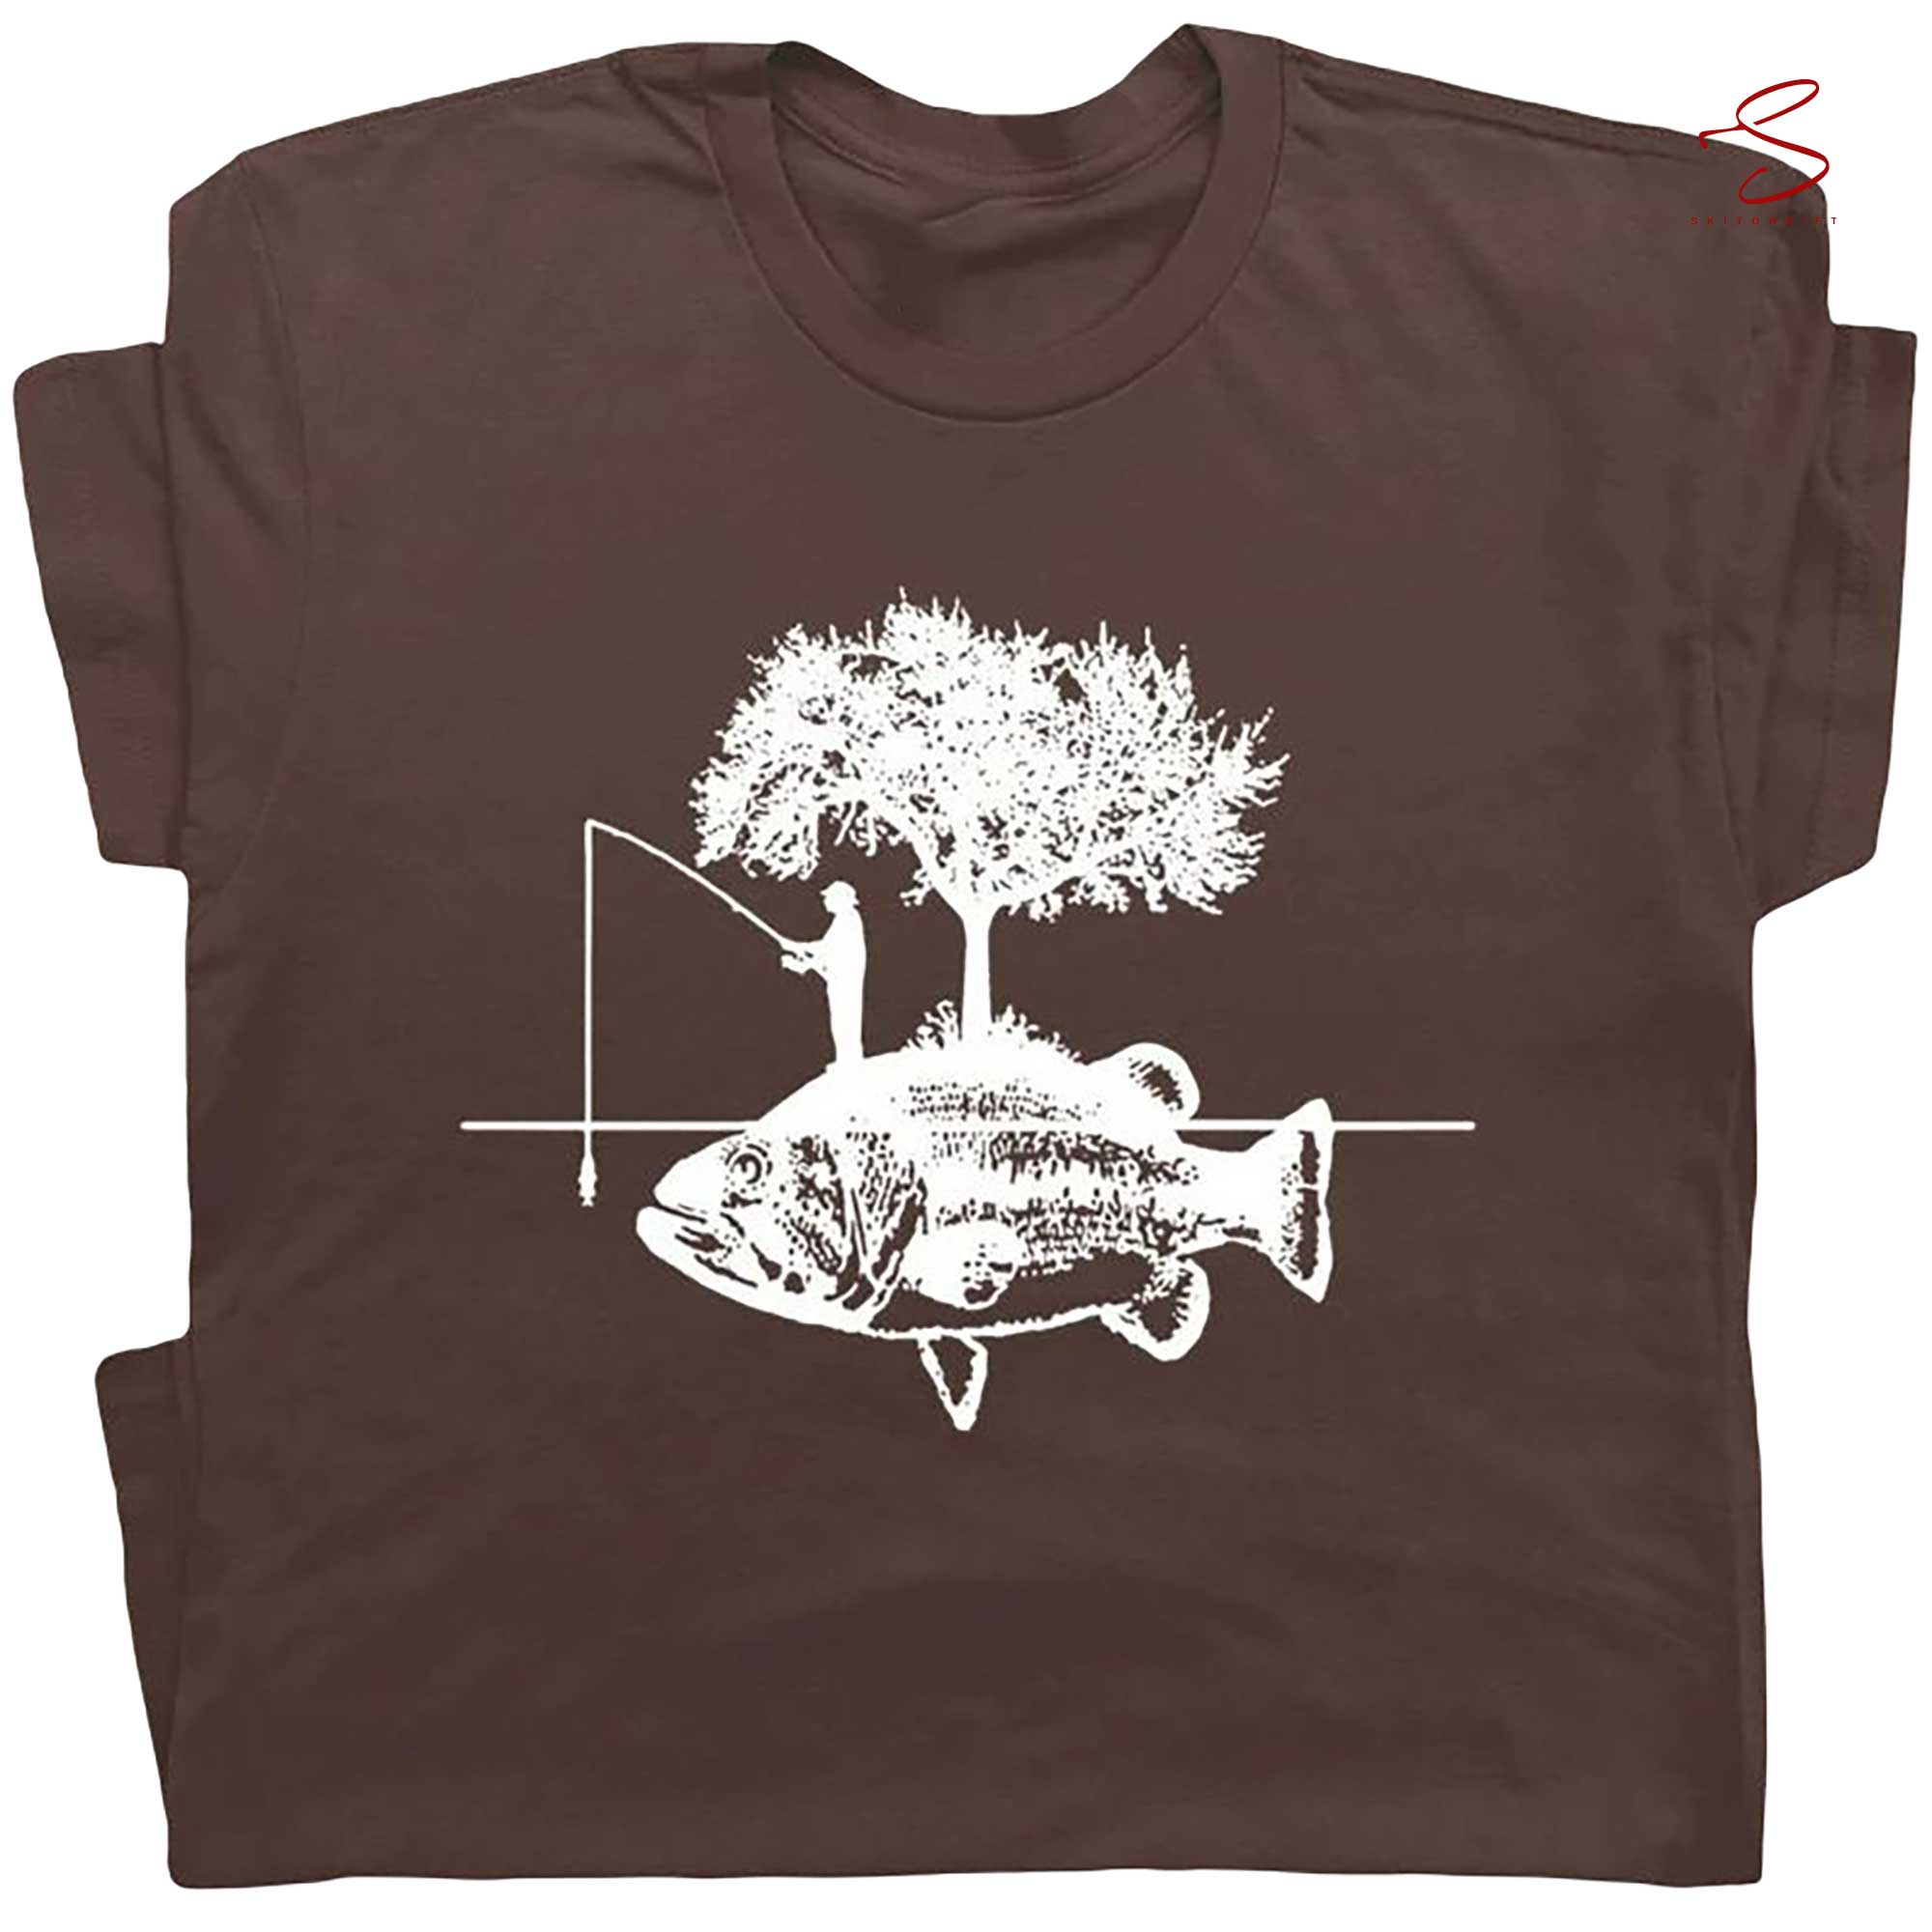 Funny Fishing For Men Bass Fly Fishing Fisherman Retro Shirt & Hoodie 